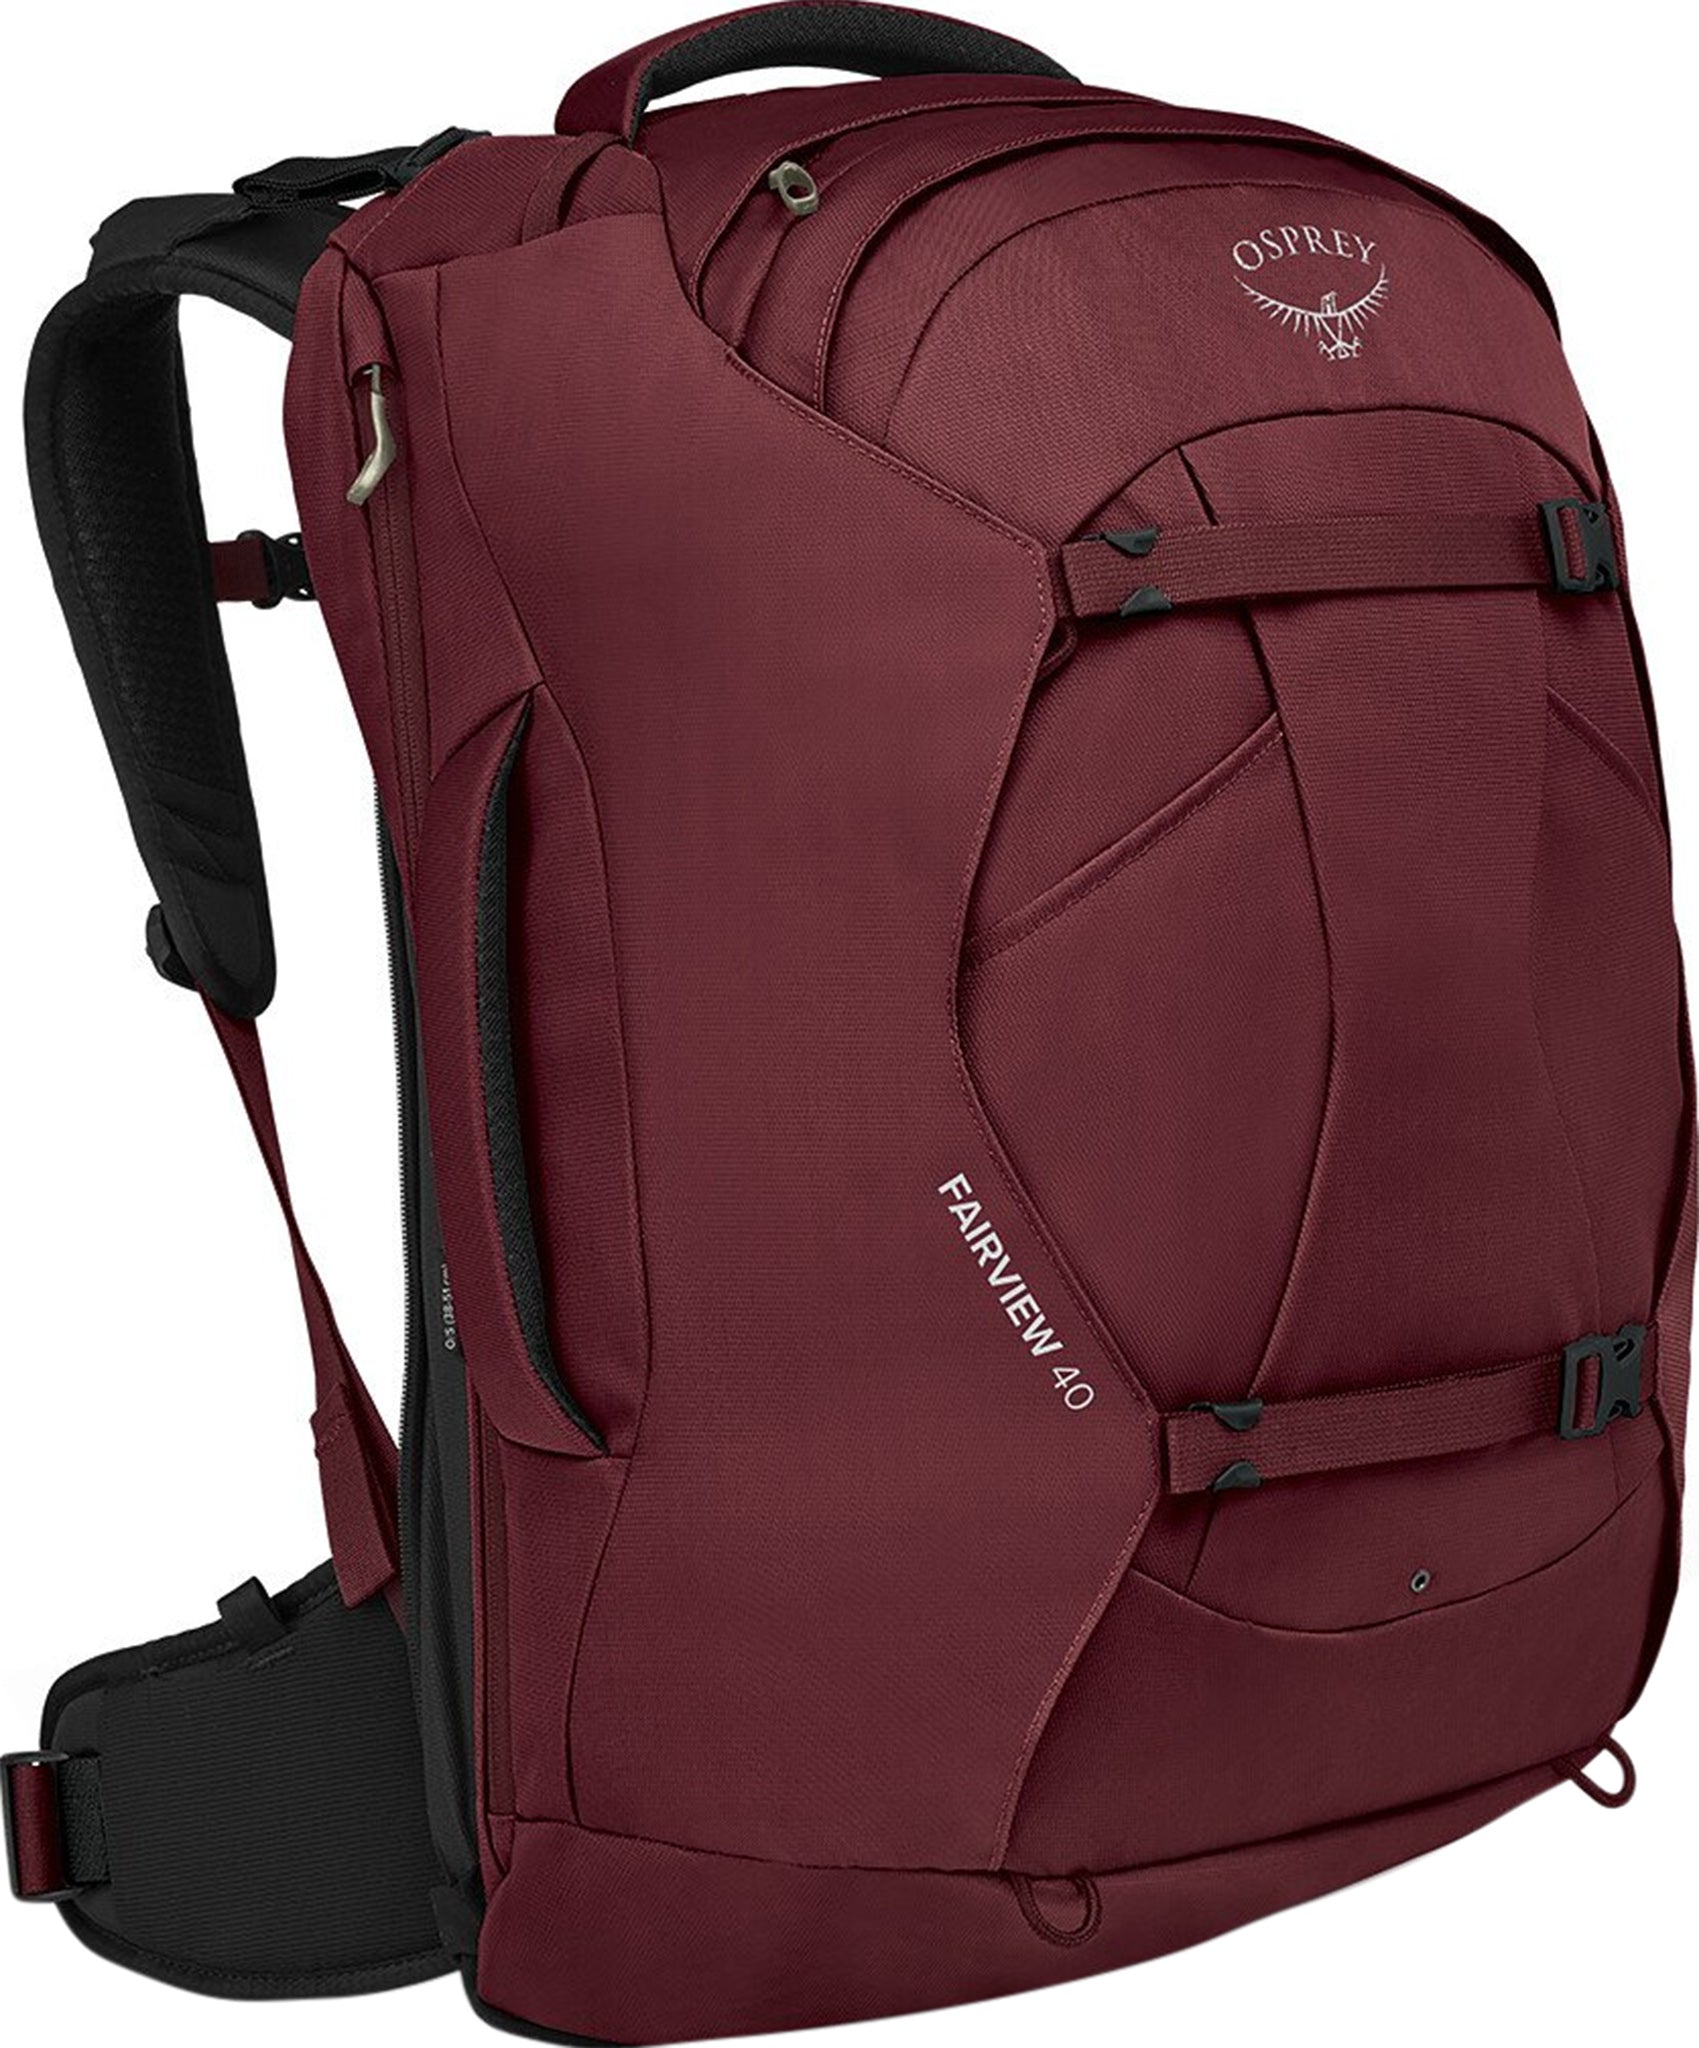 osprey fairview 40 travel backpack women's